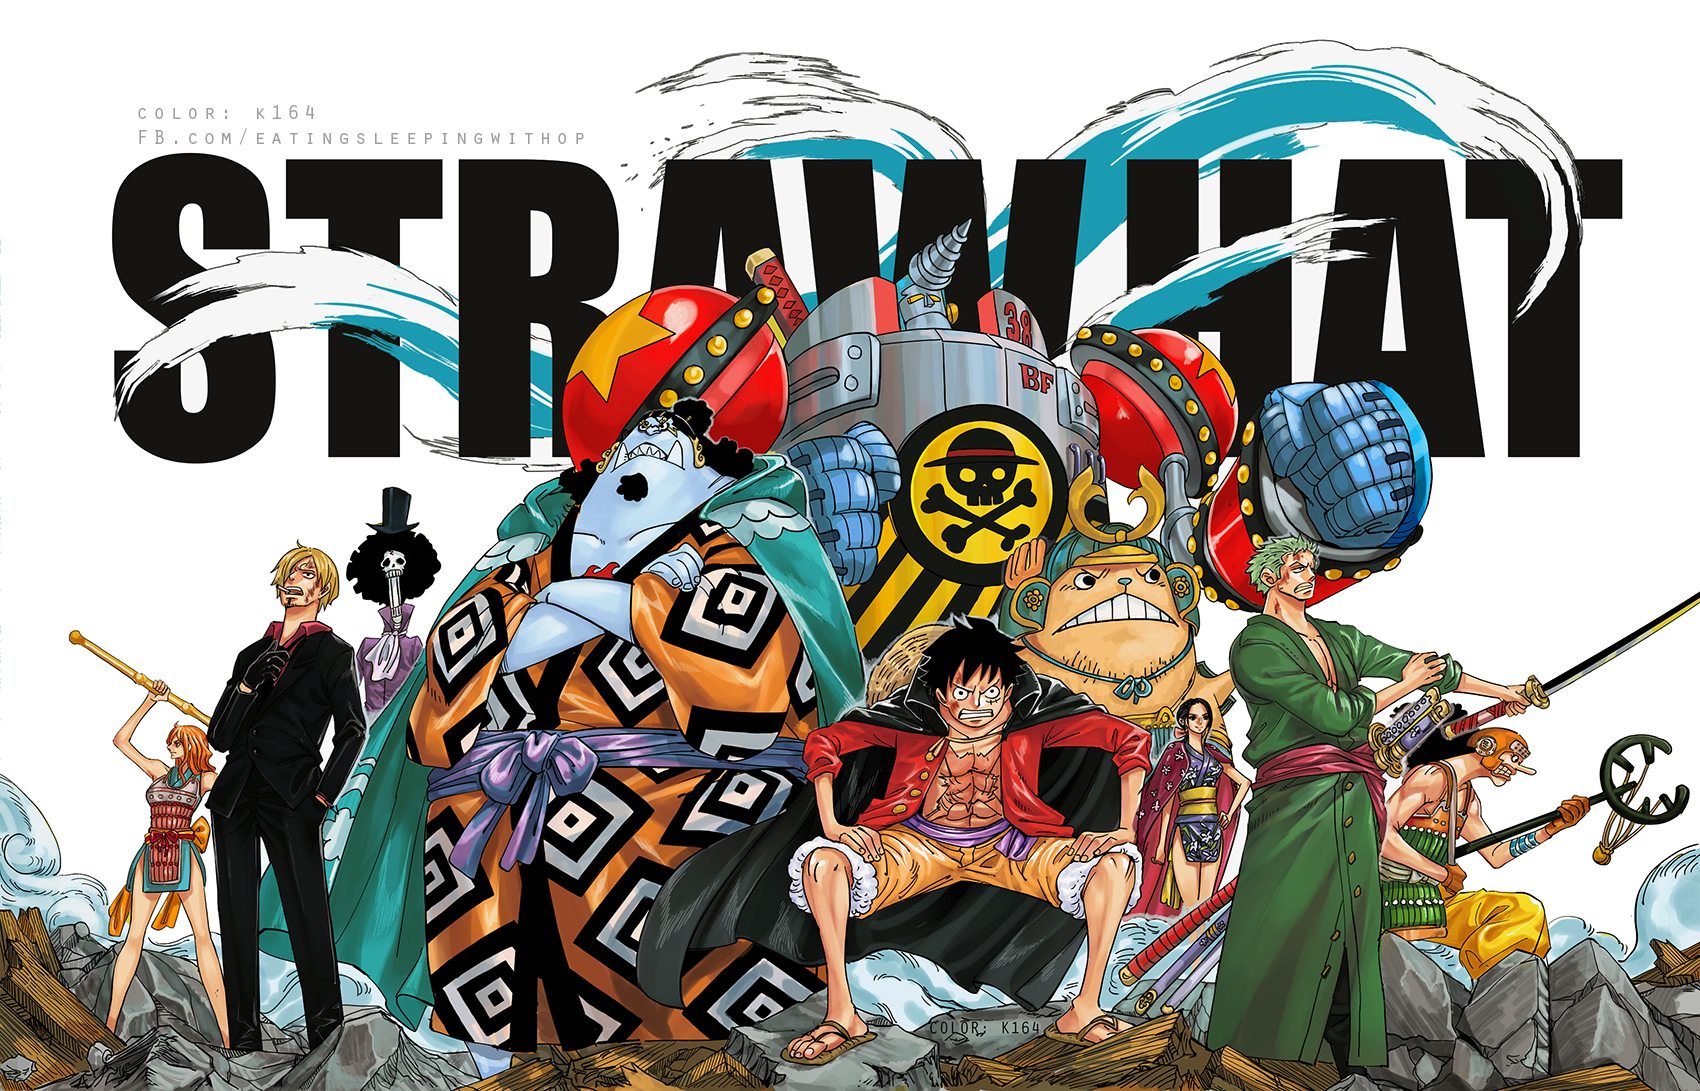 One Piece là một trong những bộ anime đình đám nhất mọi thời đại với nội dung cực kì hấp dẫn và kịch tính. Cùng xem hình ảnh về các nhân vật trong bộ truyện, những đối thủ đáng gờm và những trận chiến đỉnh cao!